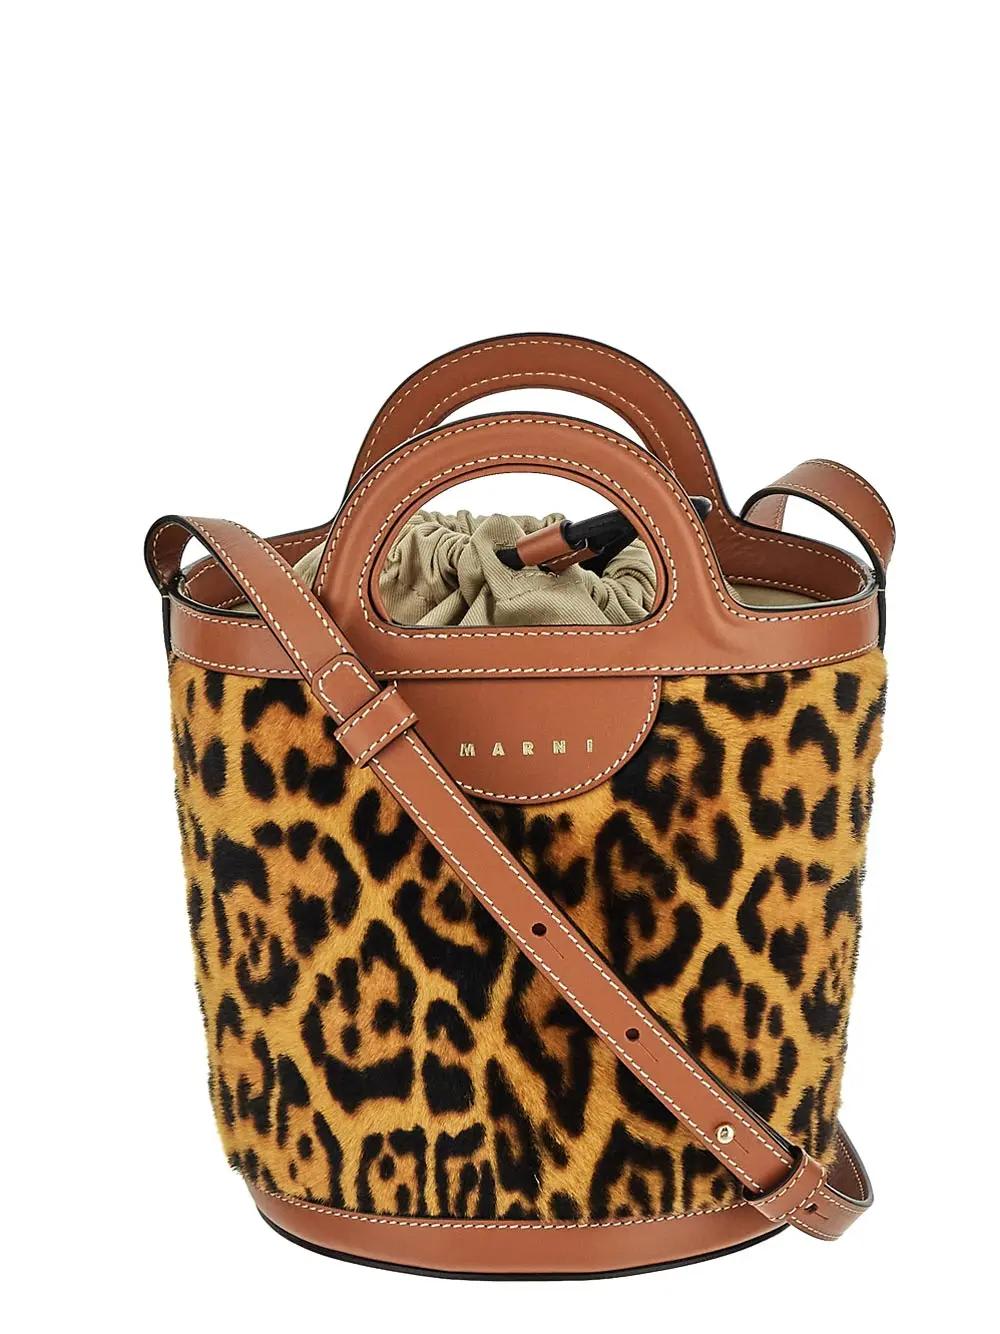 Marni Leopard Bucket Bag